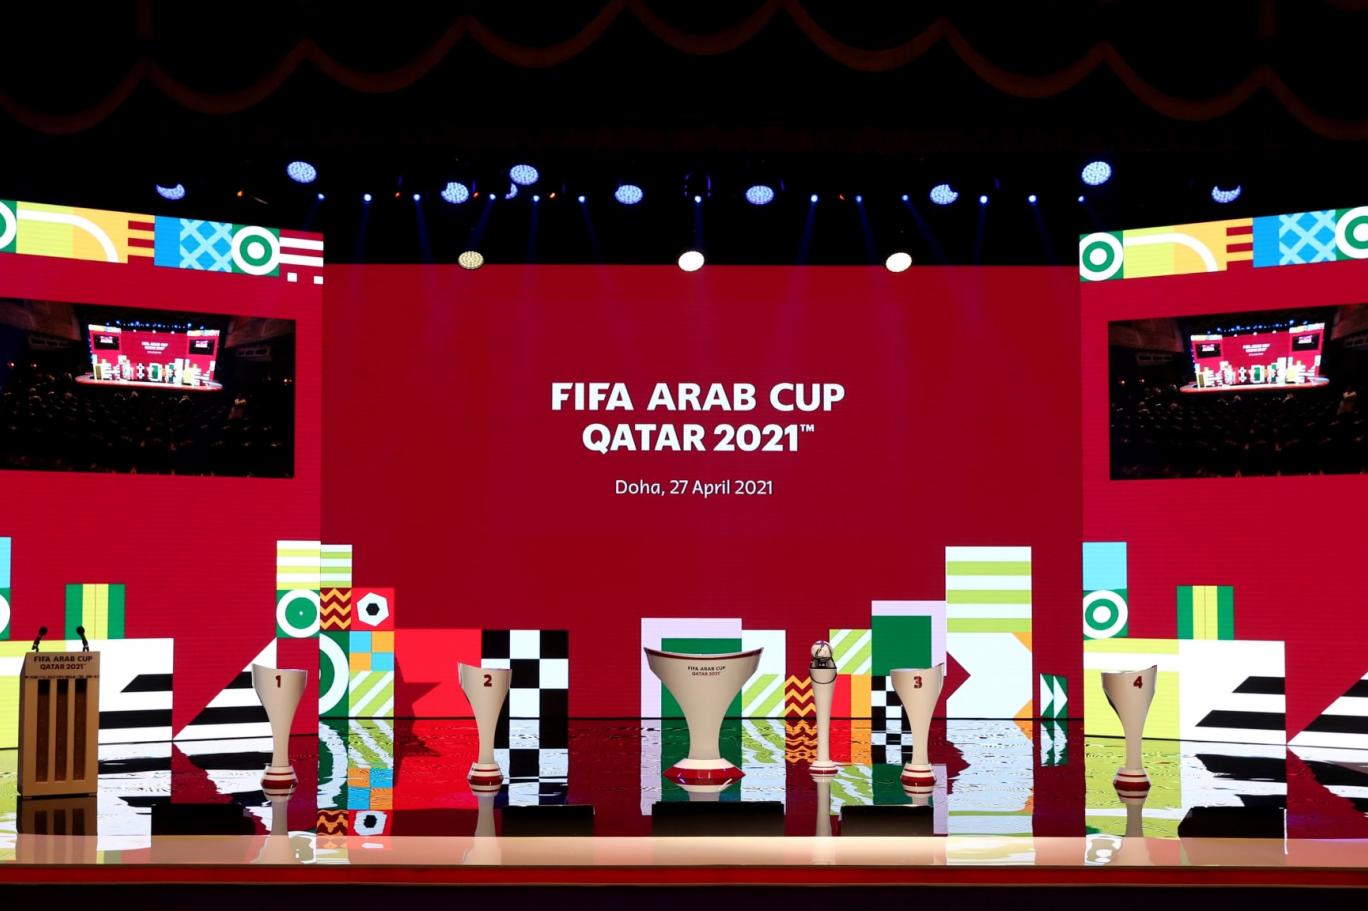 الفيفا يعلن طرح تذاكر مباريات كأس العرب اليوم.